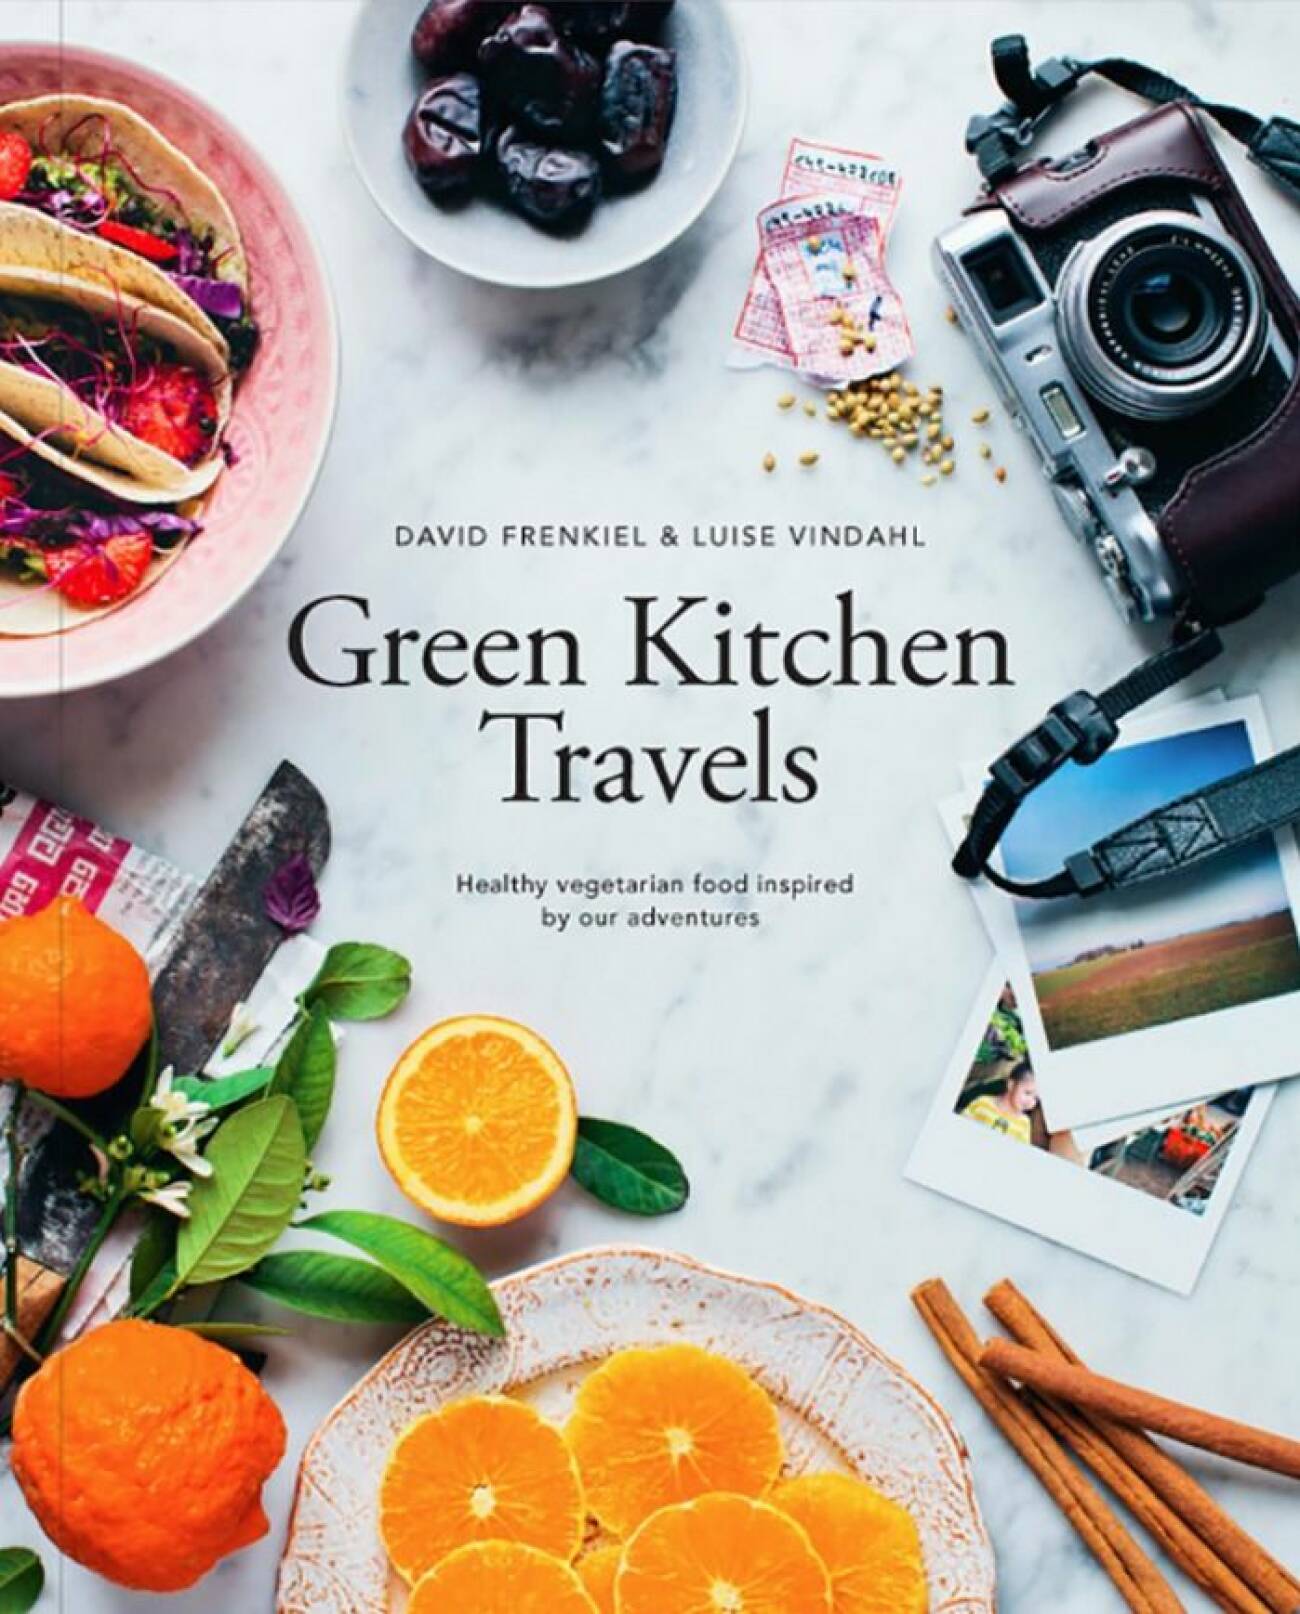 Green kitchen travels